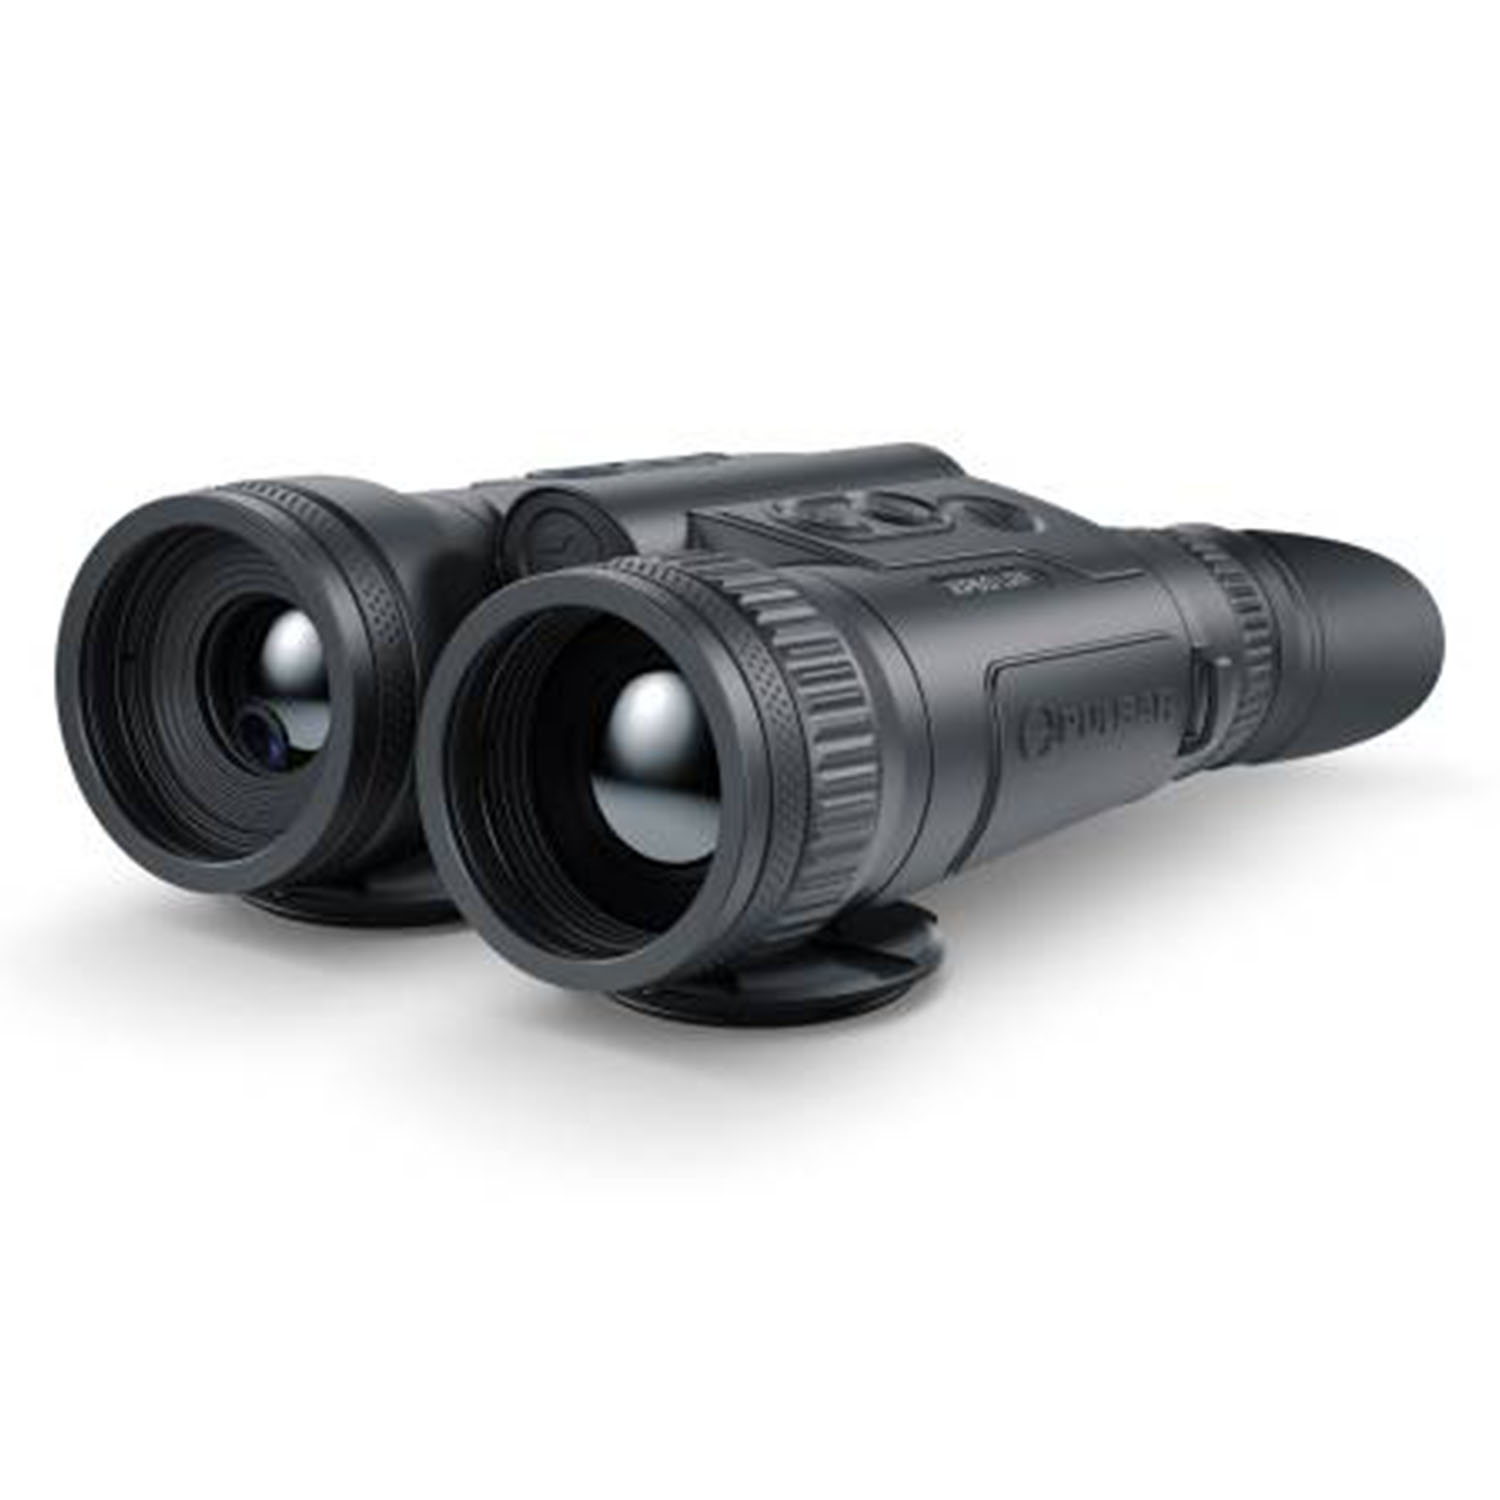 Thermal Imaging Binoculars Merger LRF XP50 - Optics